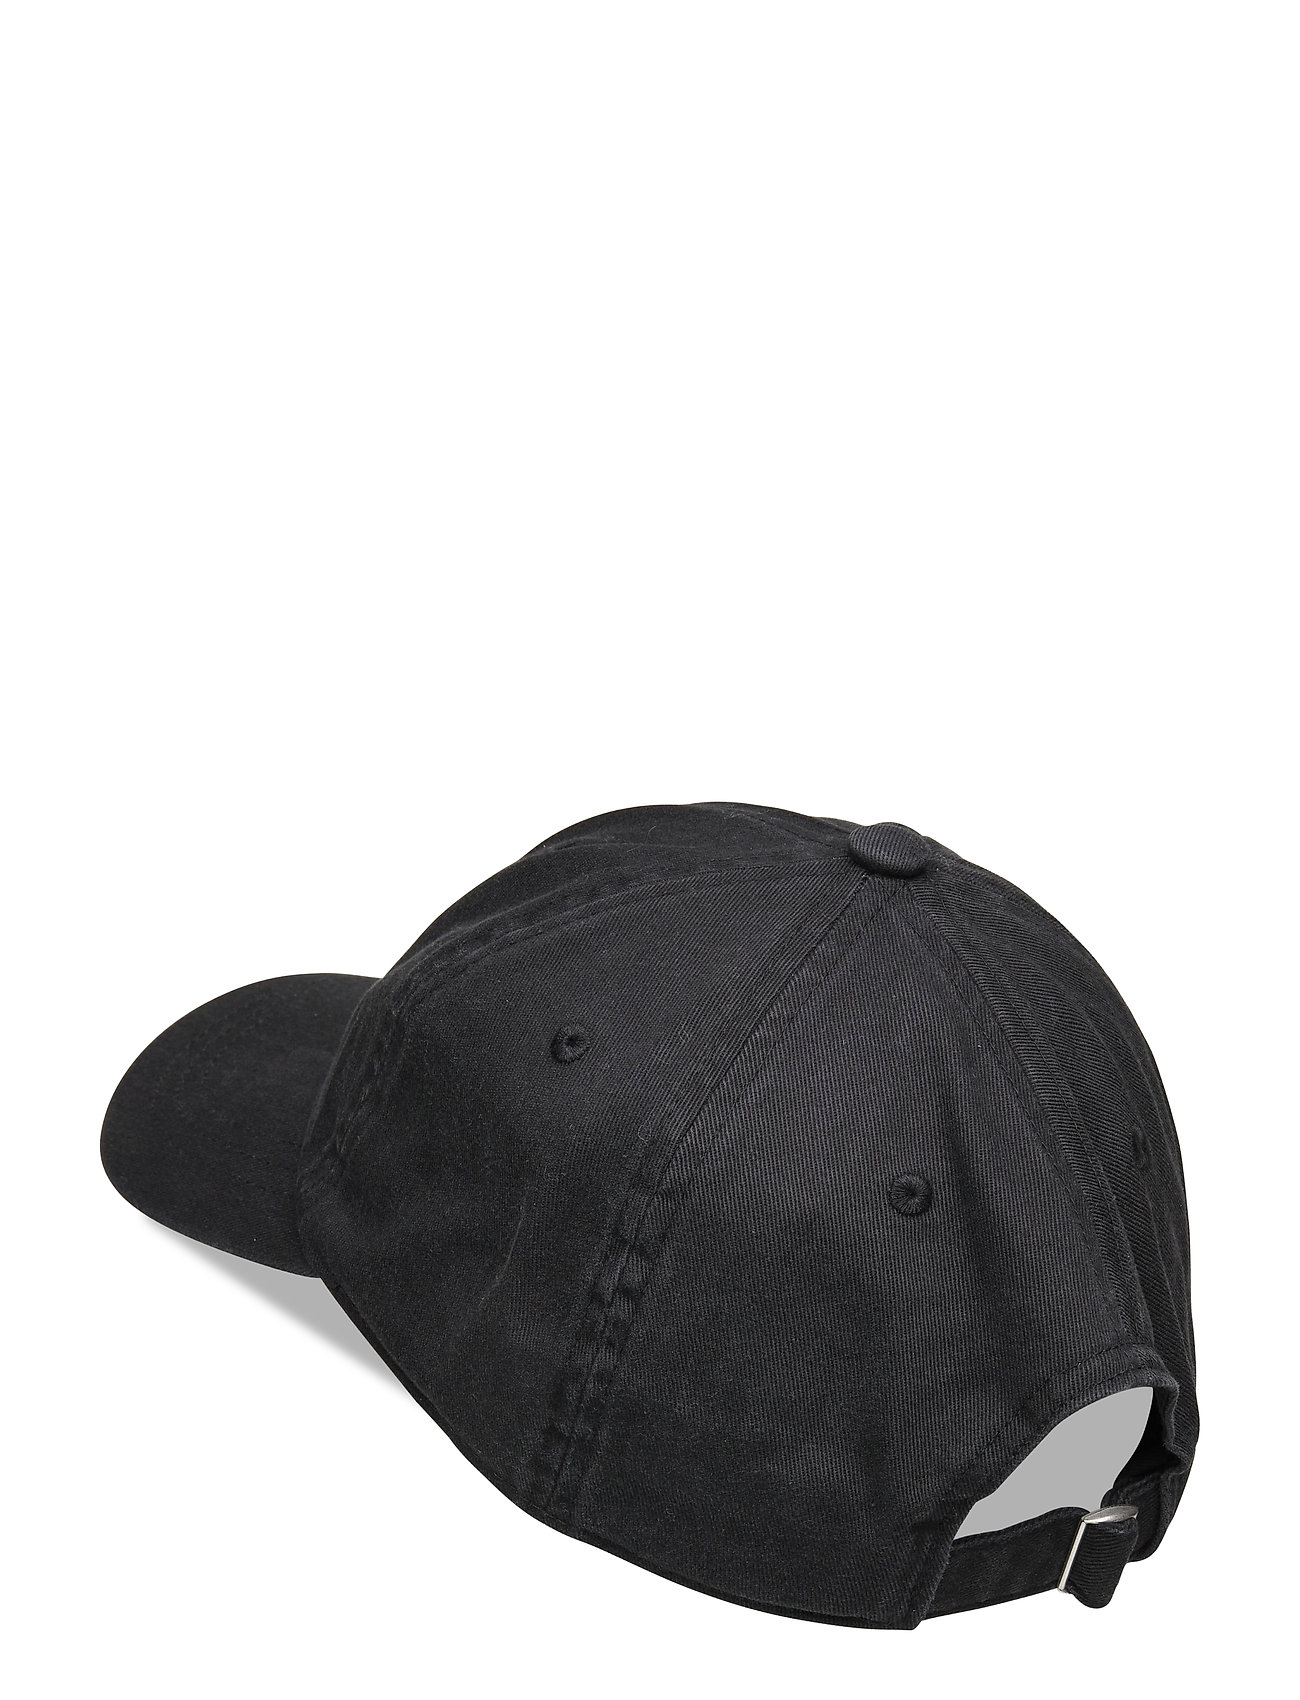 Baseball Cap Accessories Headwear Caps Sort Adidas Originals